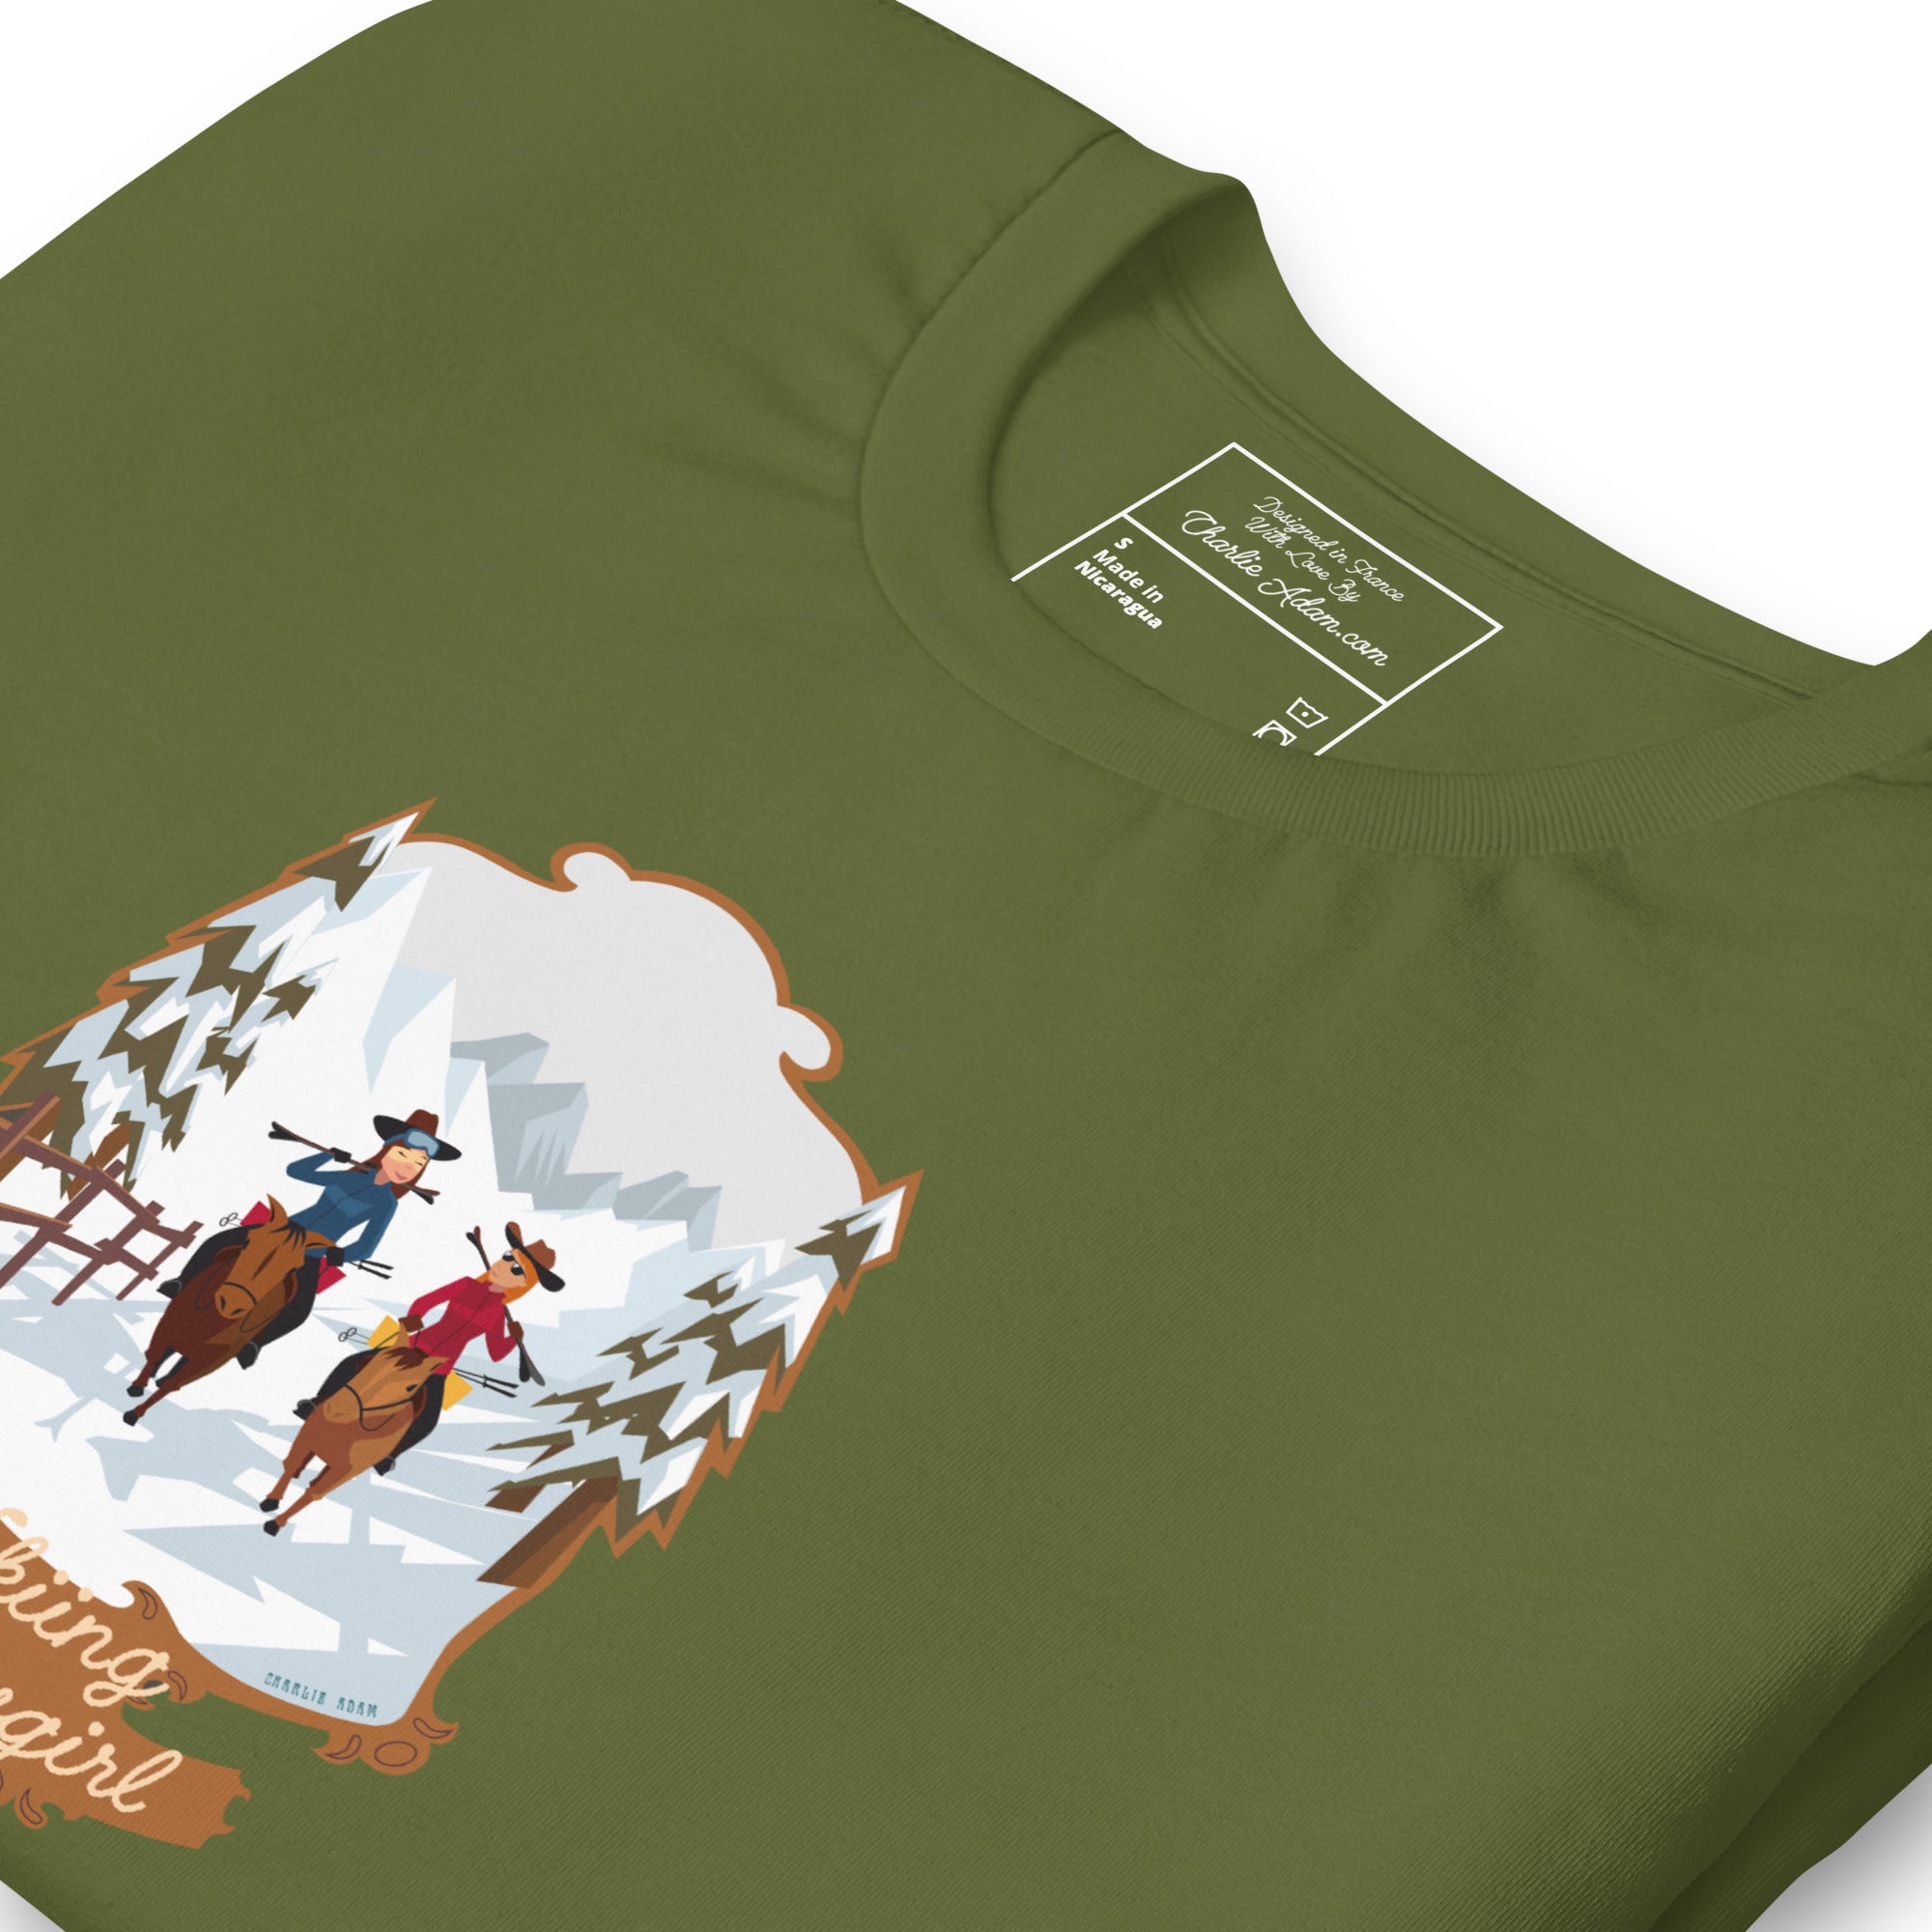 T-shirt en coton unisexe The Skiing Cowgirl sur couleurs foncées